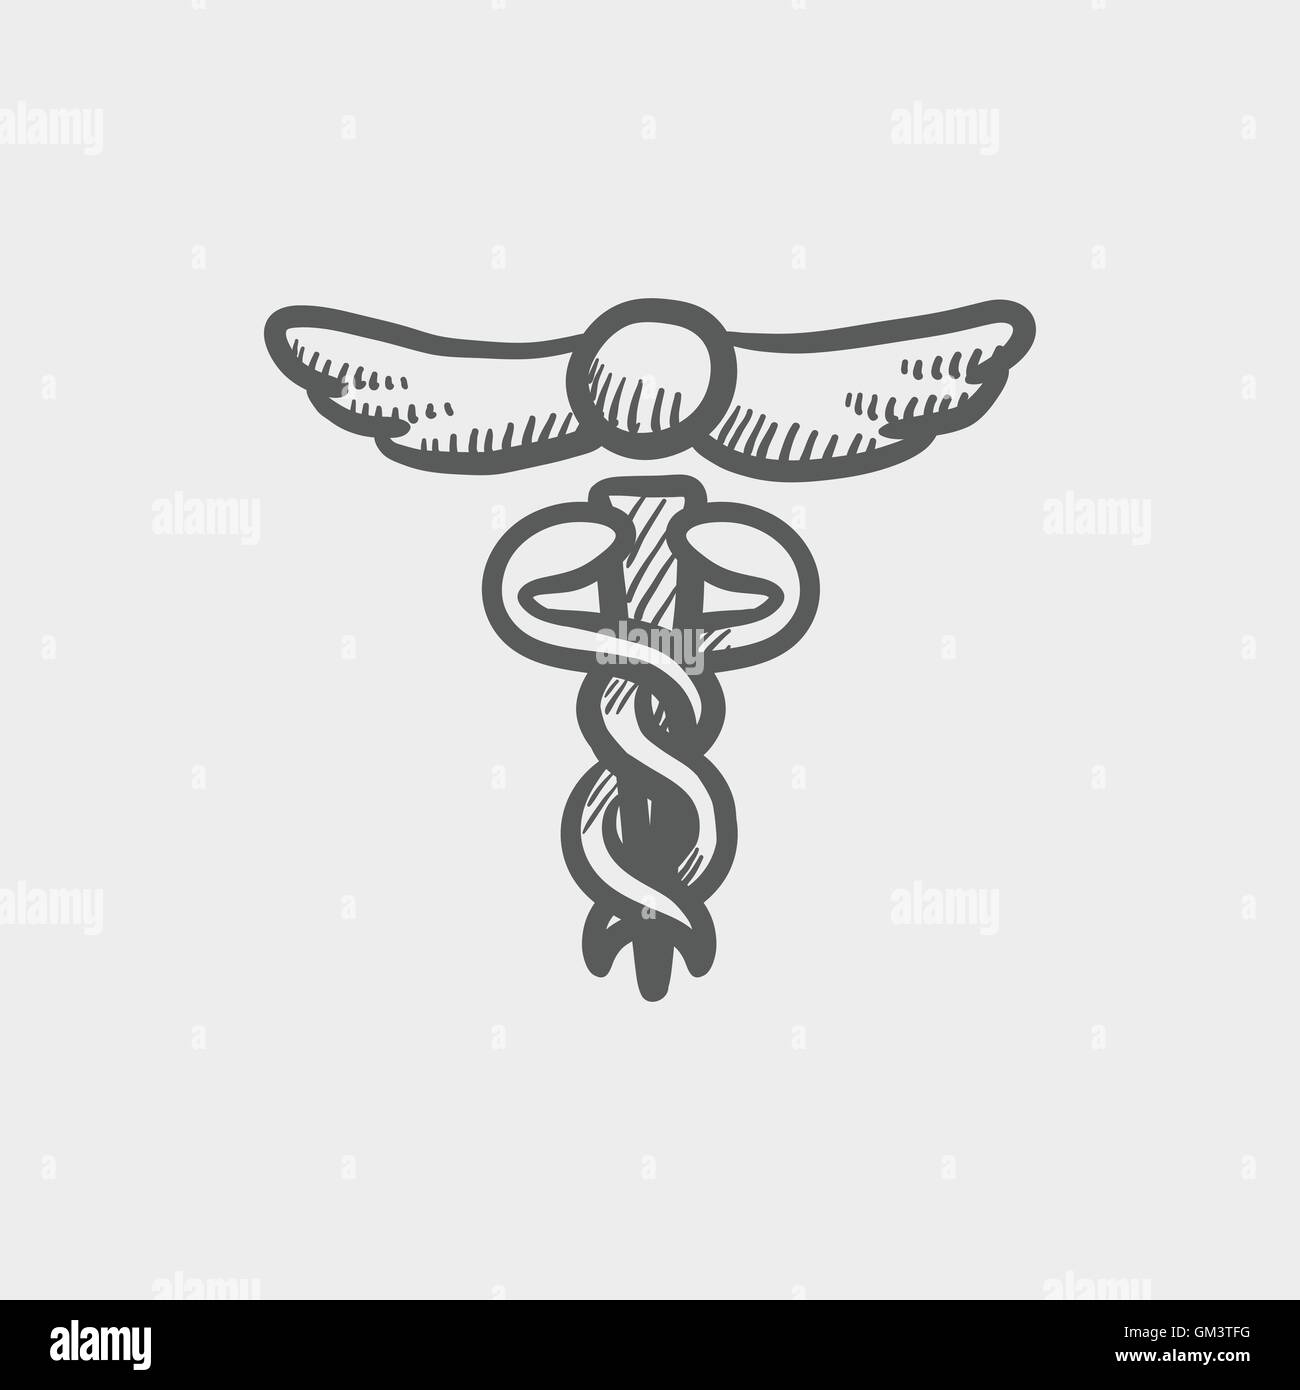 Medical symbol sketch icon Stock Vector